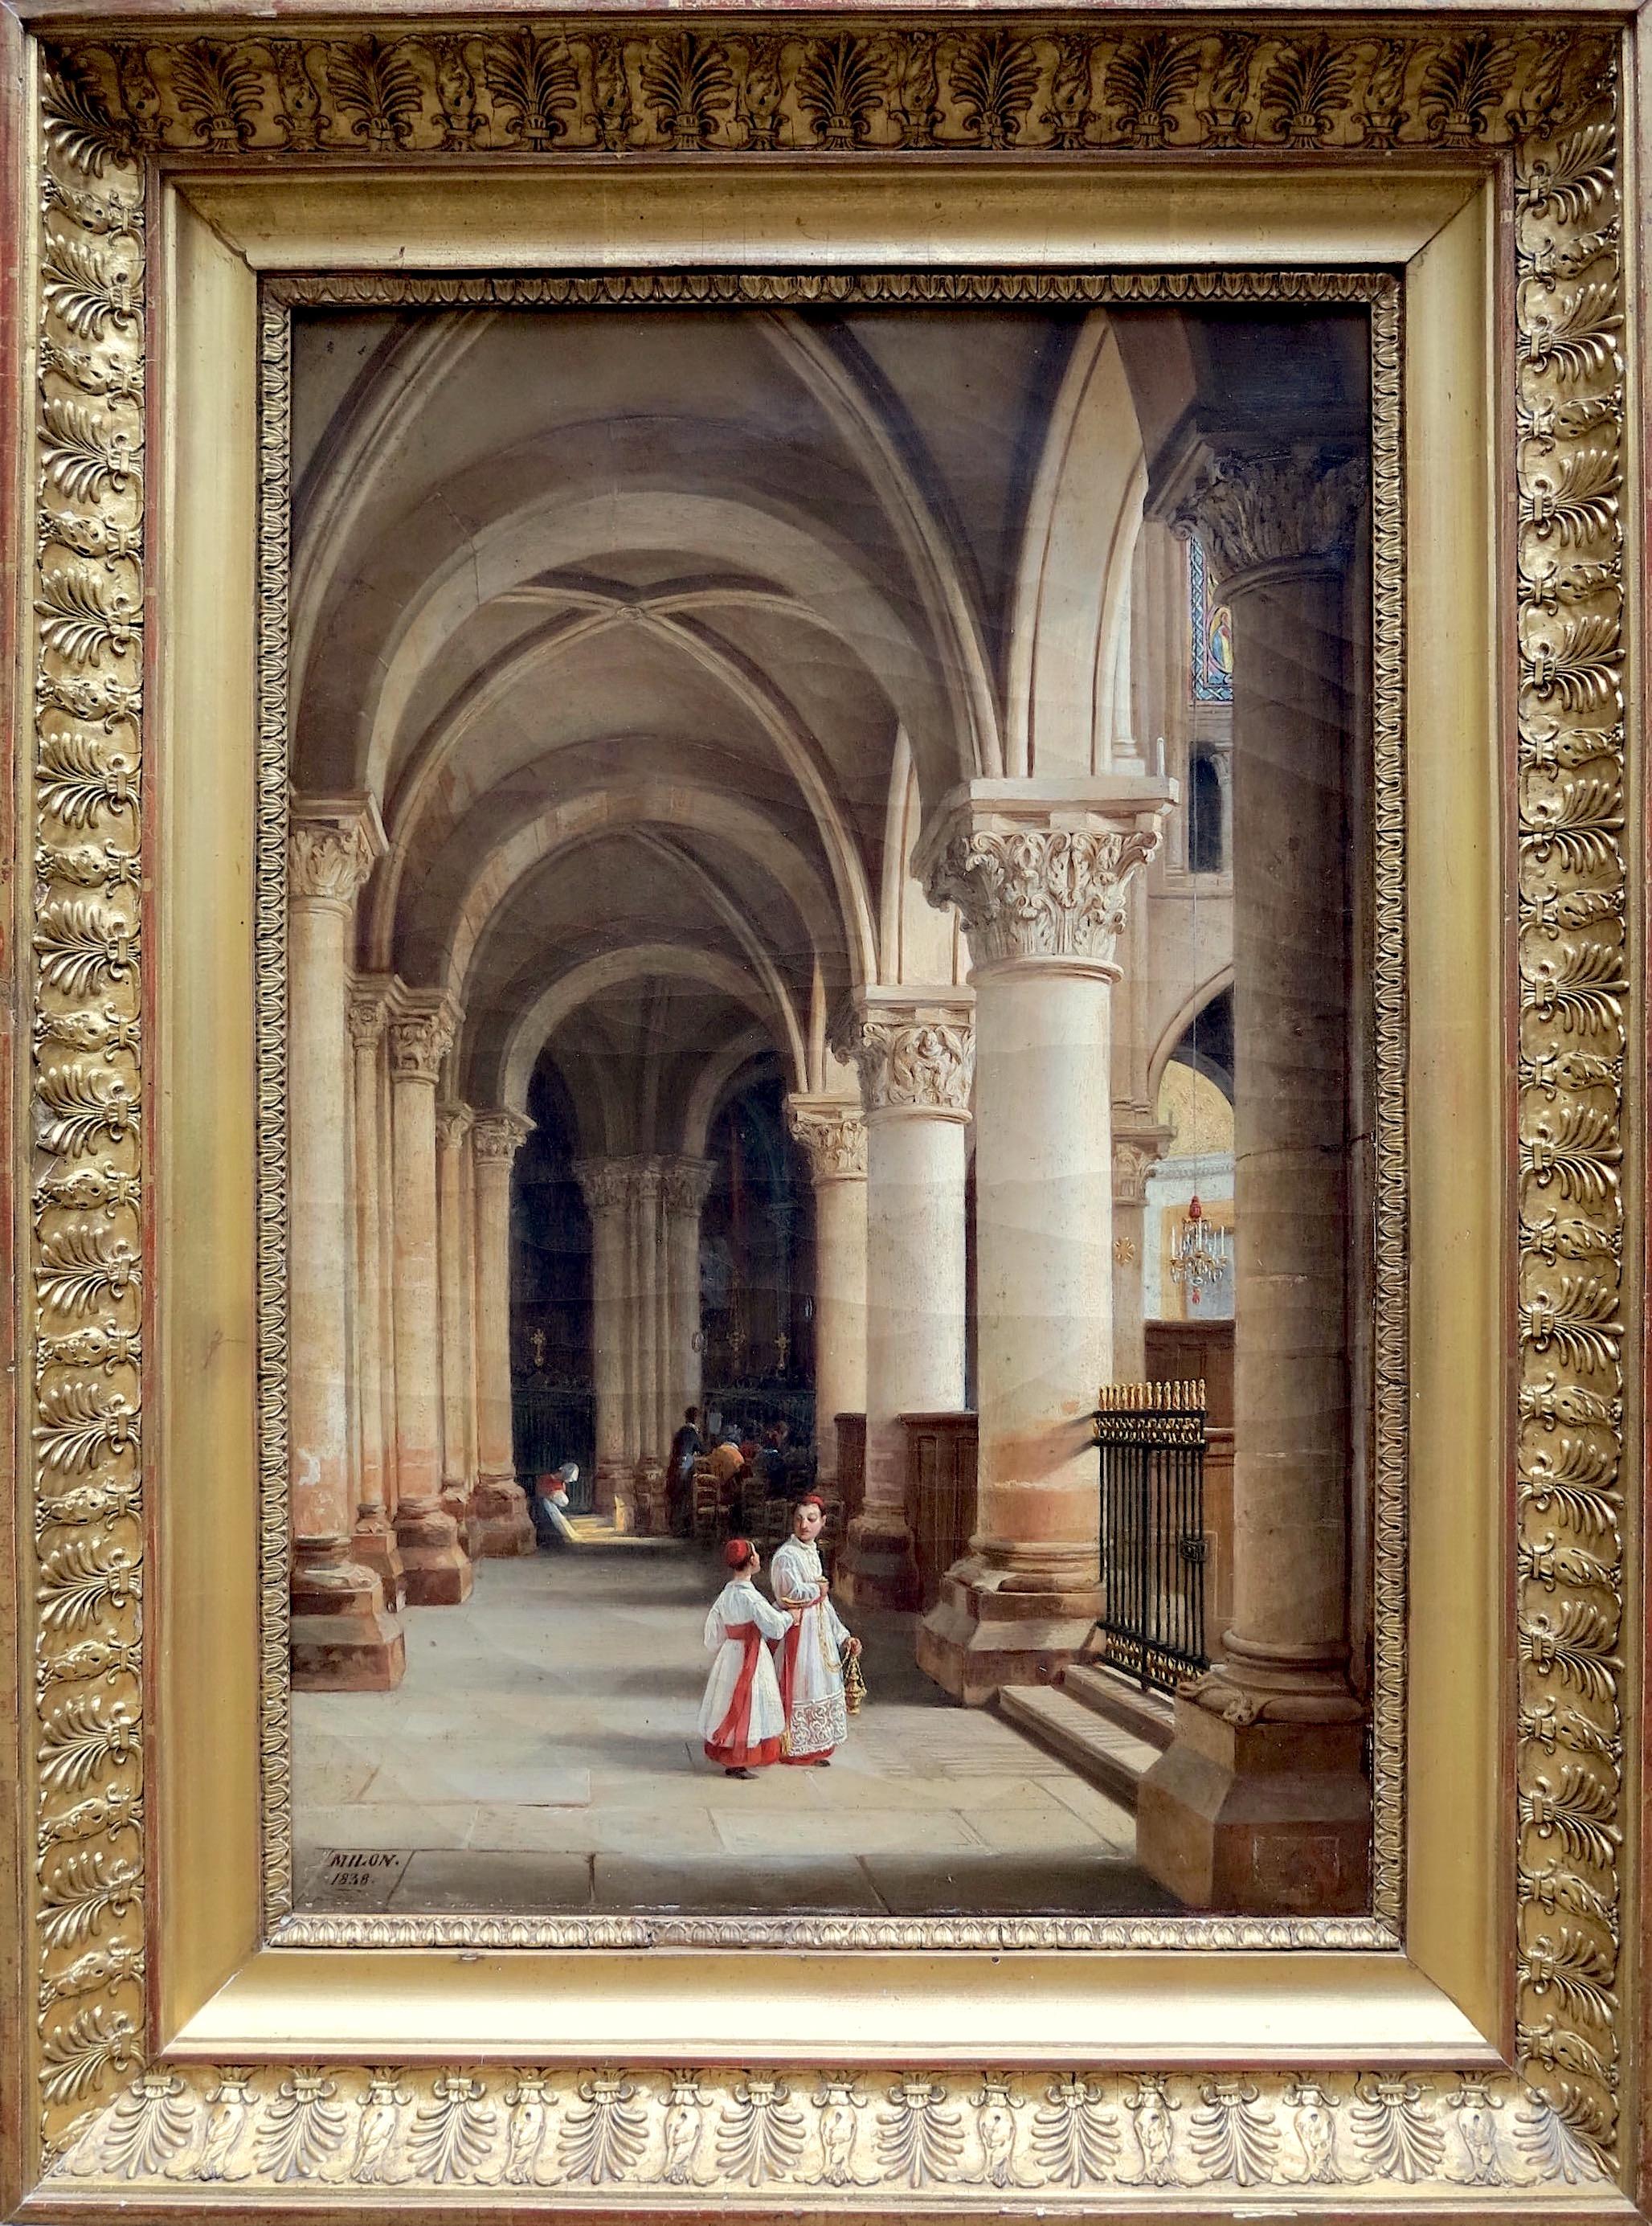 View of one of the aisles of the apse of Saint-Germain-des-Prés, Paris, France